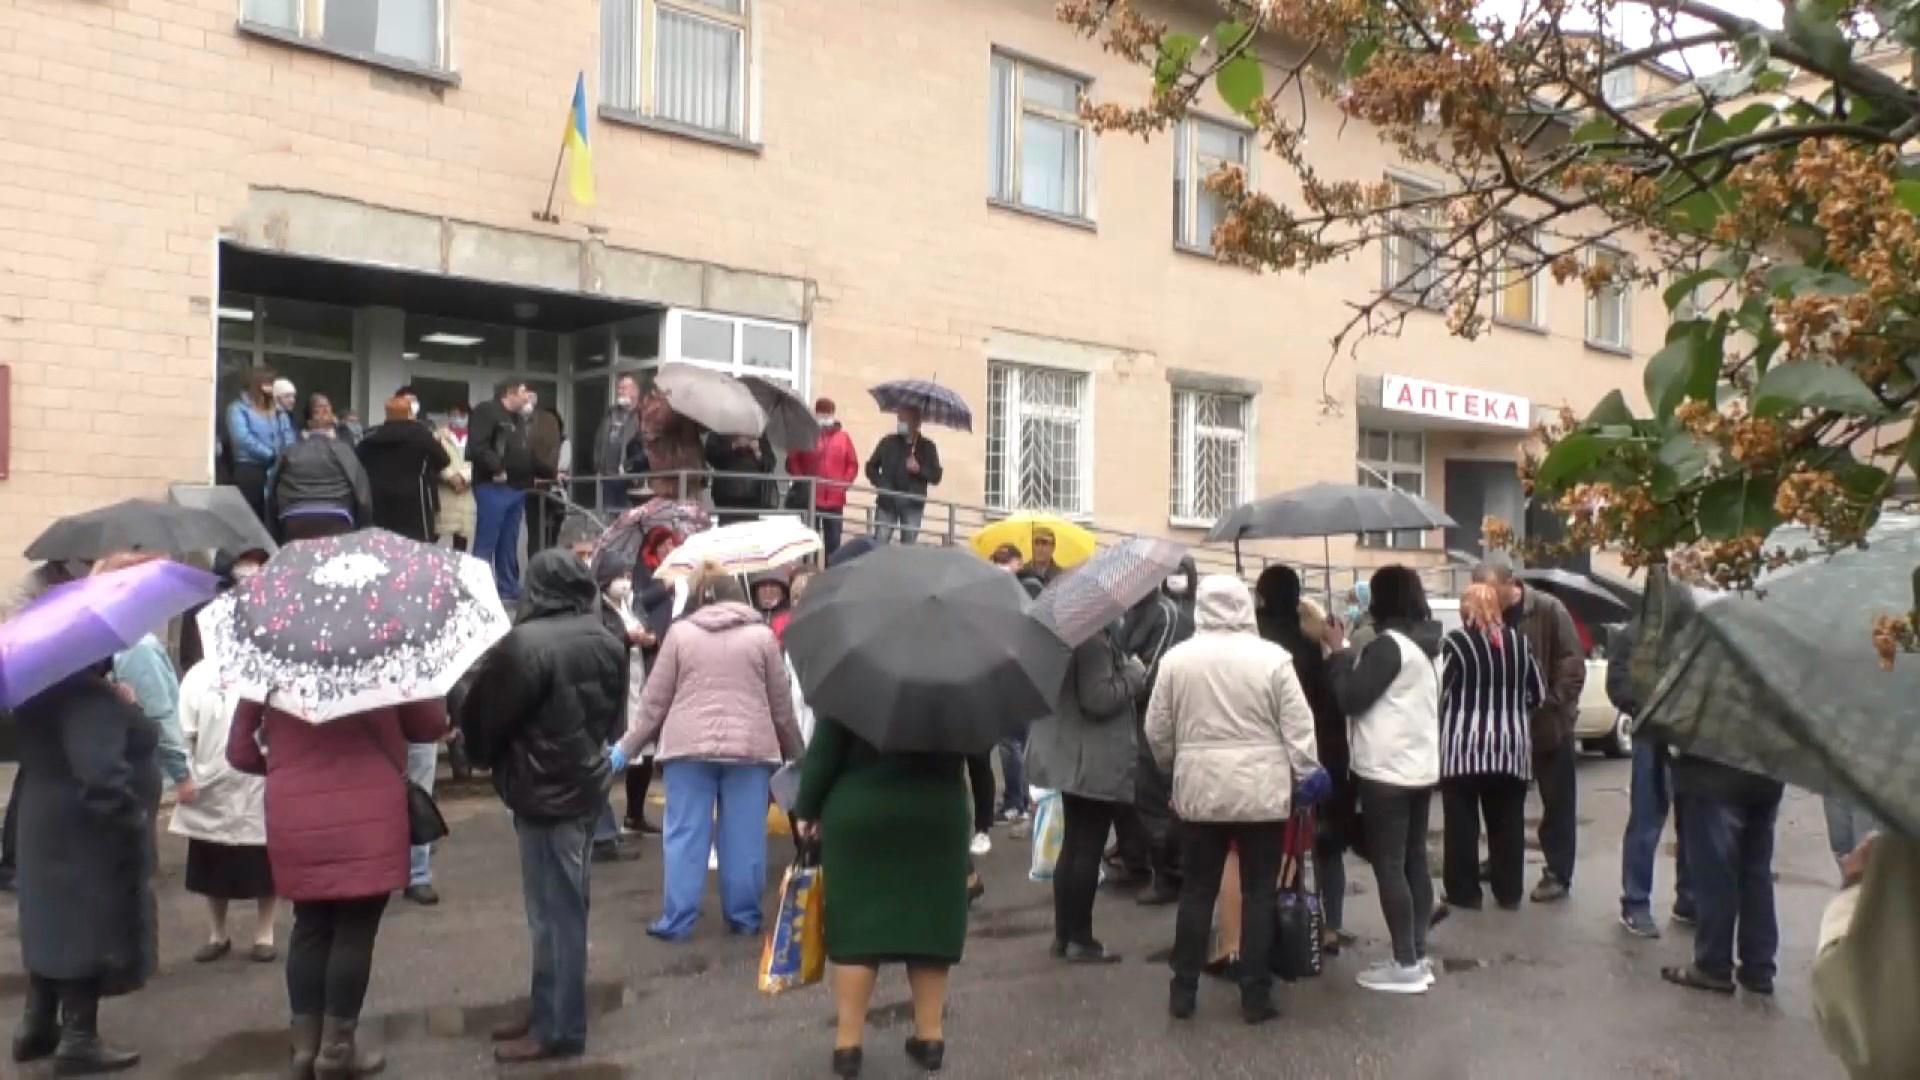 Не хватает денег: на Черкасщине вспыхнули протесты из-за закрытия больницы – видео